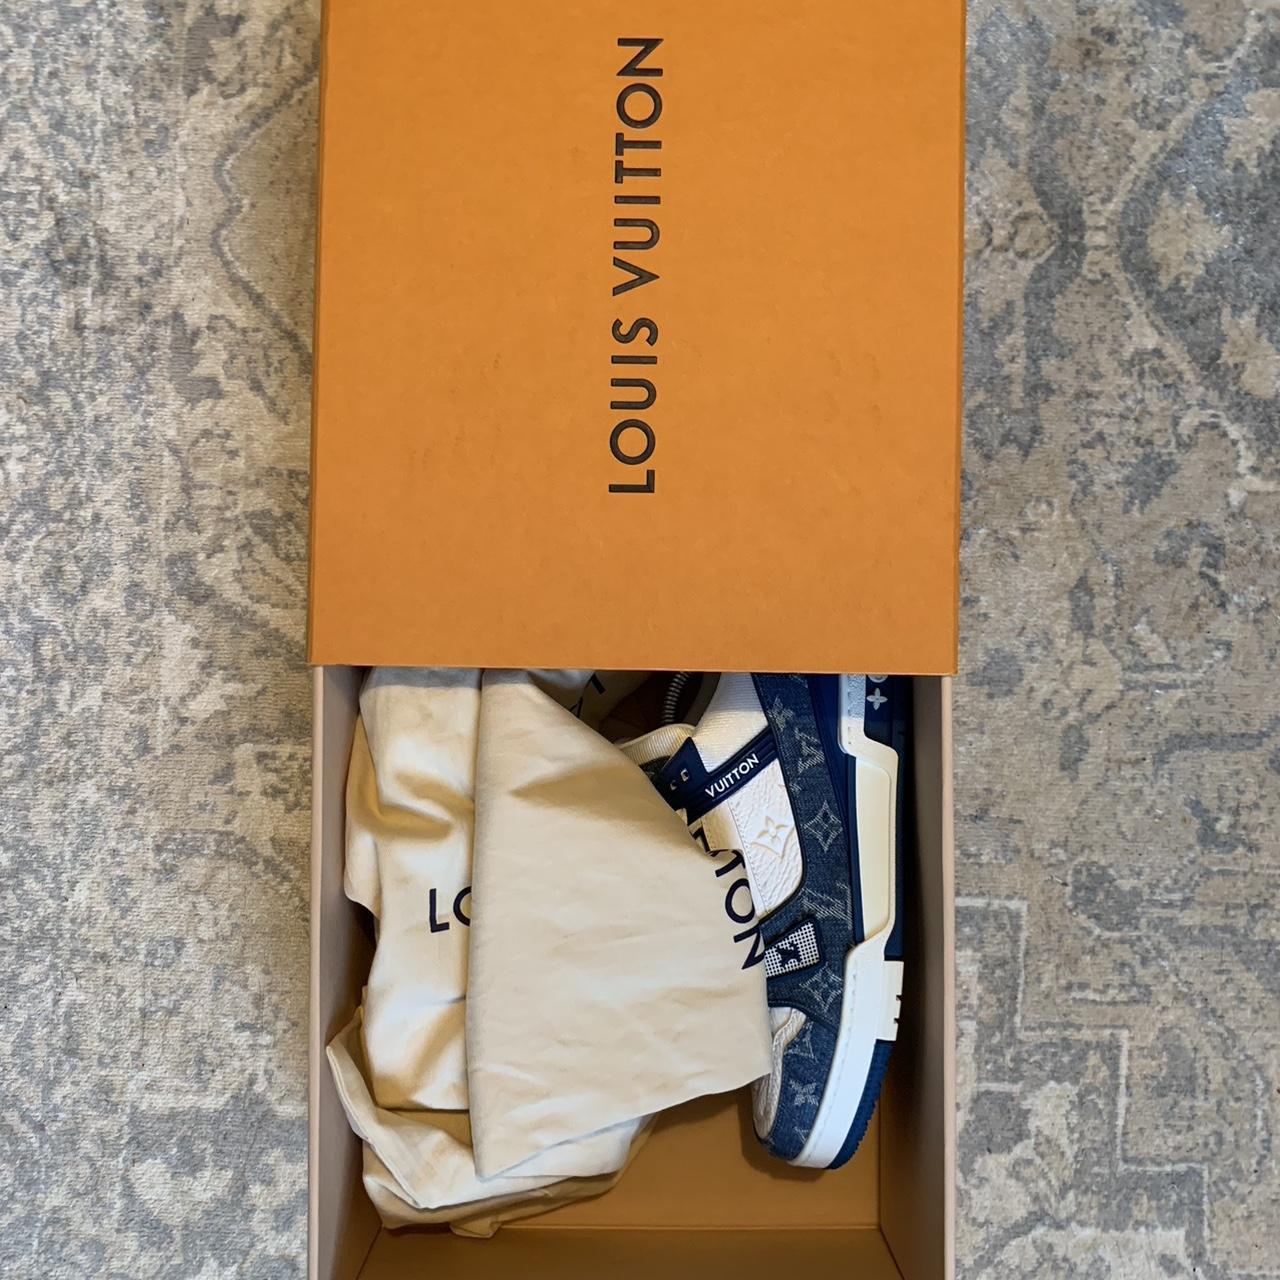 Mens 2018 Louis Vuitton boots. 💯 percent AUTHENTIC - Depop